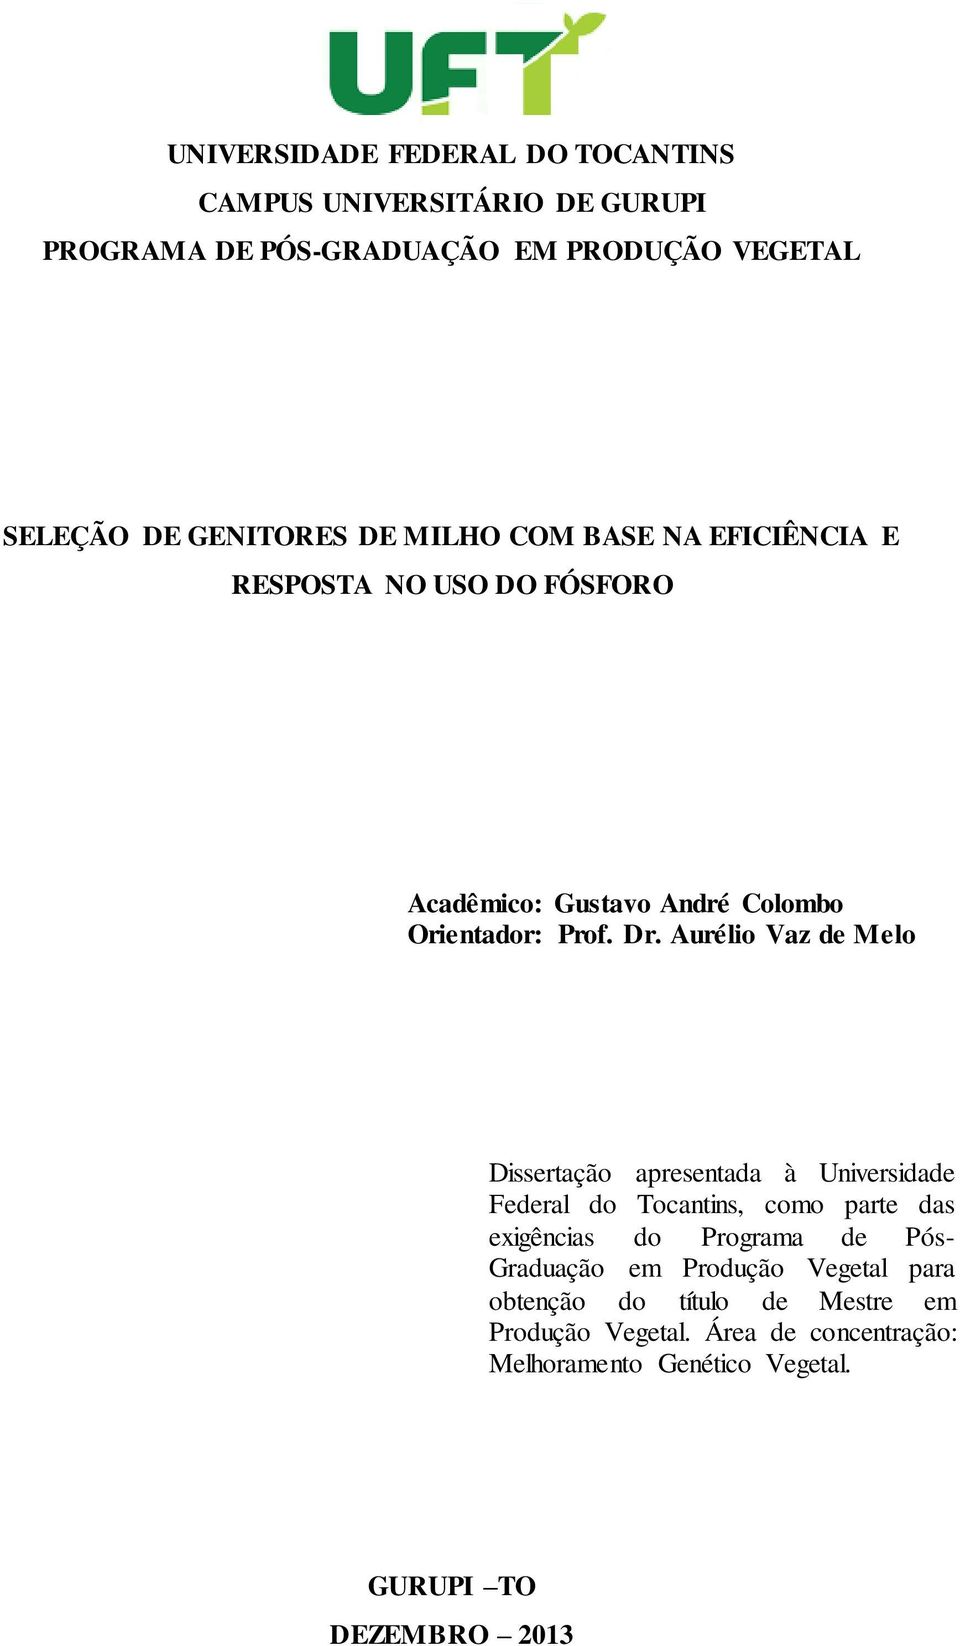 Aurélio Vaz de Melo Dissertação apresentada à Universidade Federal do Tocantins, como parte das exigências do Programa de Pós-